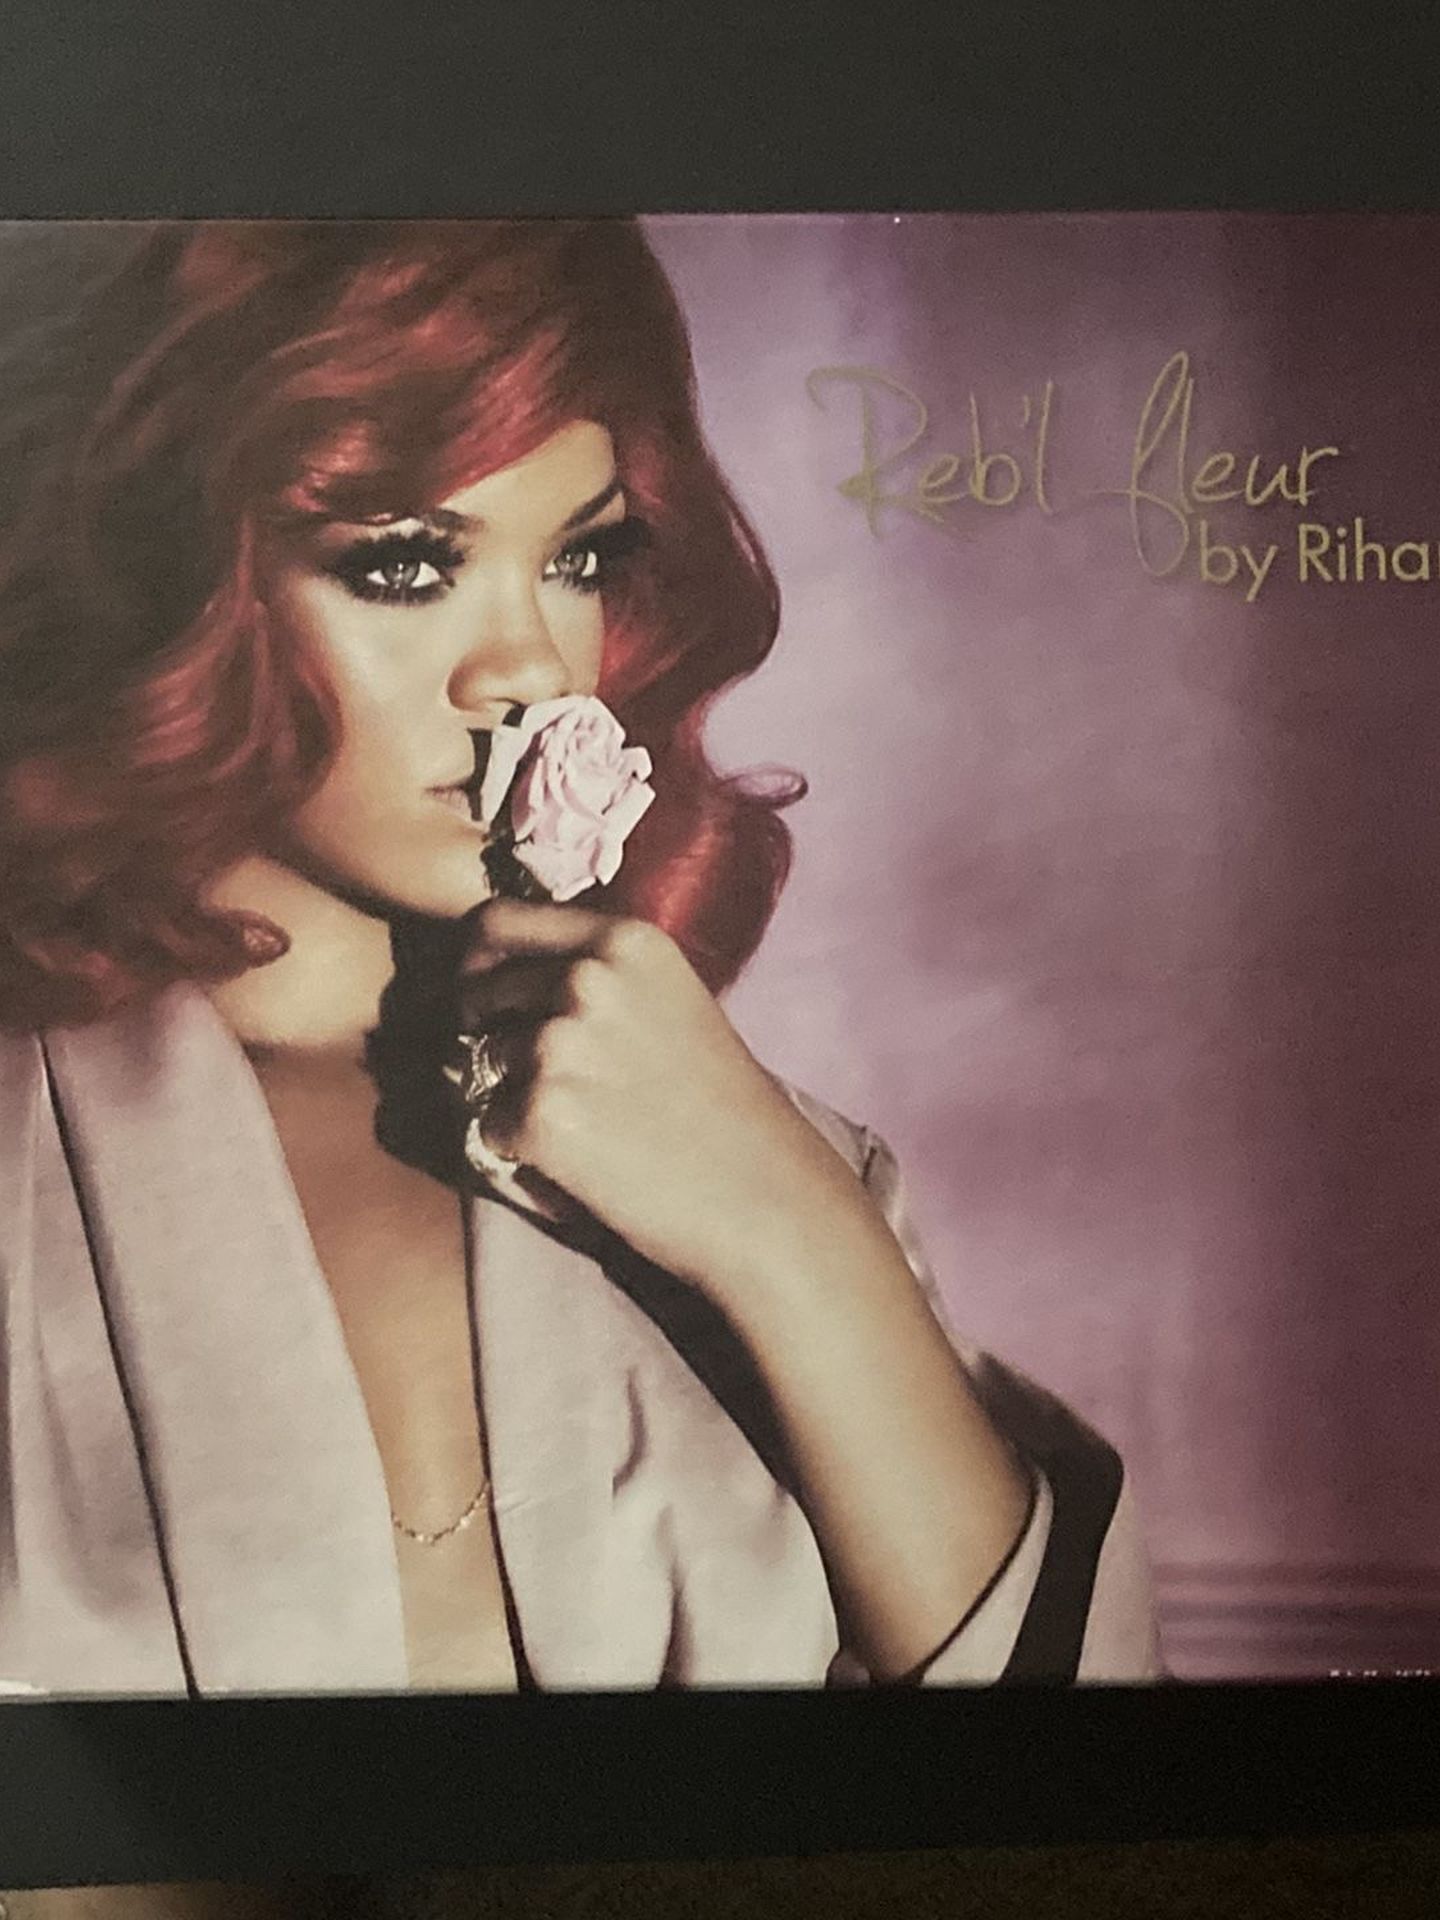 Rihanna Reb’l Le Fleur